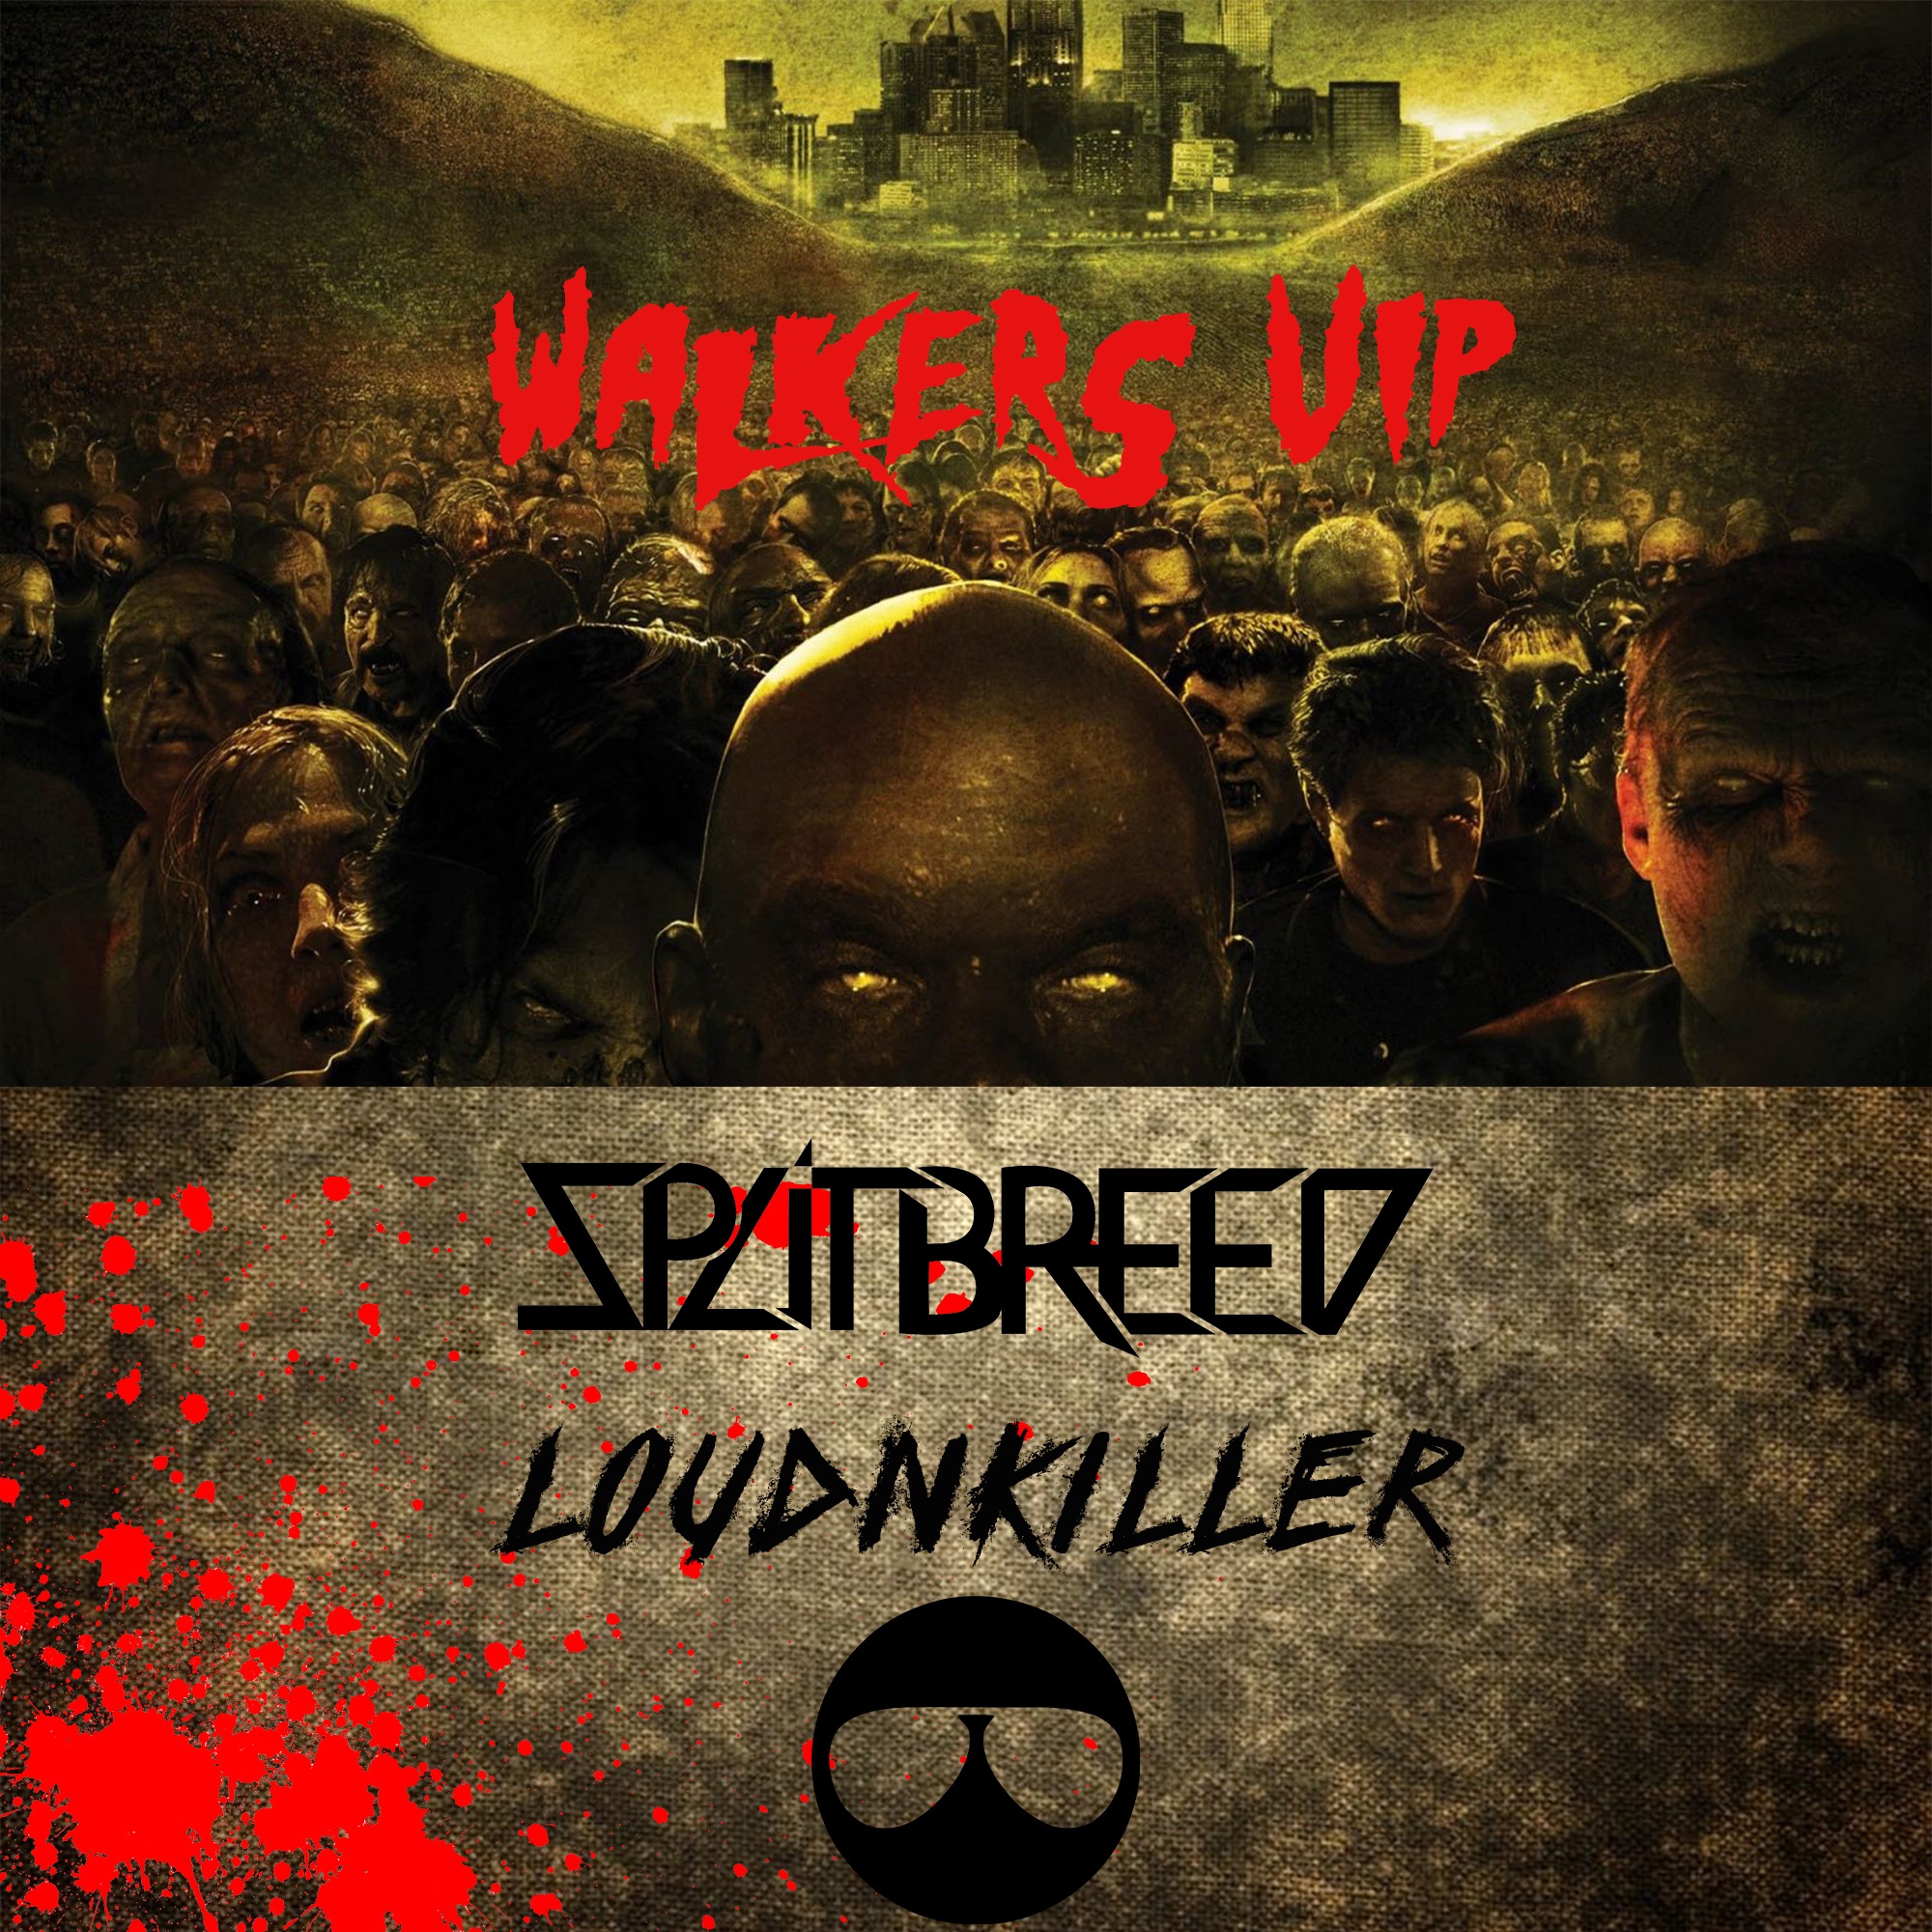 Pobierać SPLITBREED & LOUD N' KILLER - WALKERS (VIP)